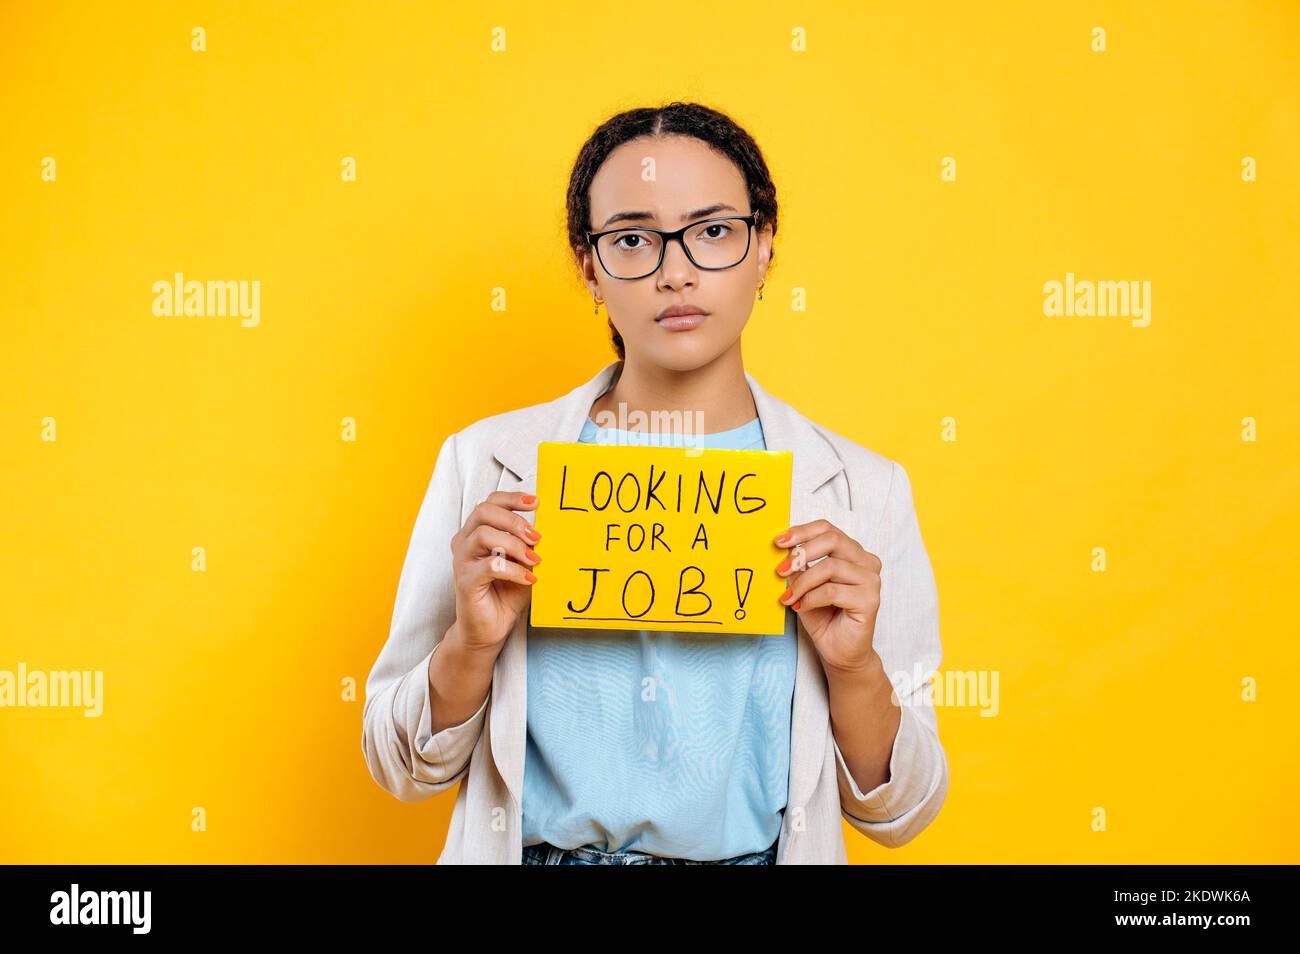 Frustriert traurig gemischte Rasse junge Frau mit Brille, kreative Spezialist auf der Suche nach einem Job, steht auf isoliertem orangefarbenen Hintergrund, zeigt ein Schild auf der Suche nach einem Job, schaut in Enttäuschung auf die Kamera Stockfoto